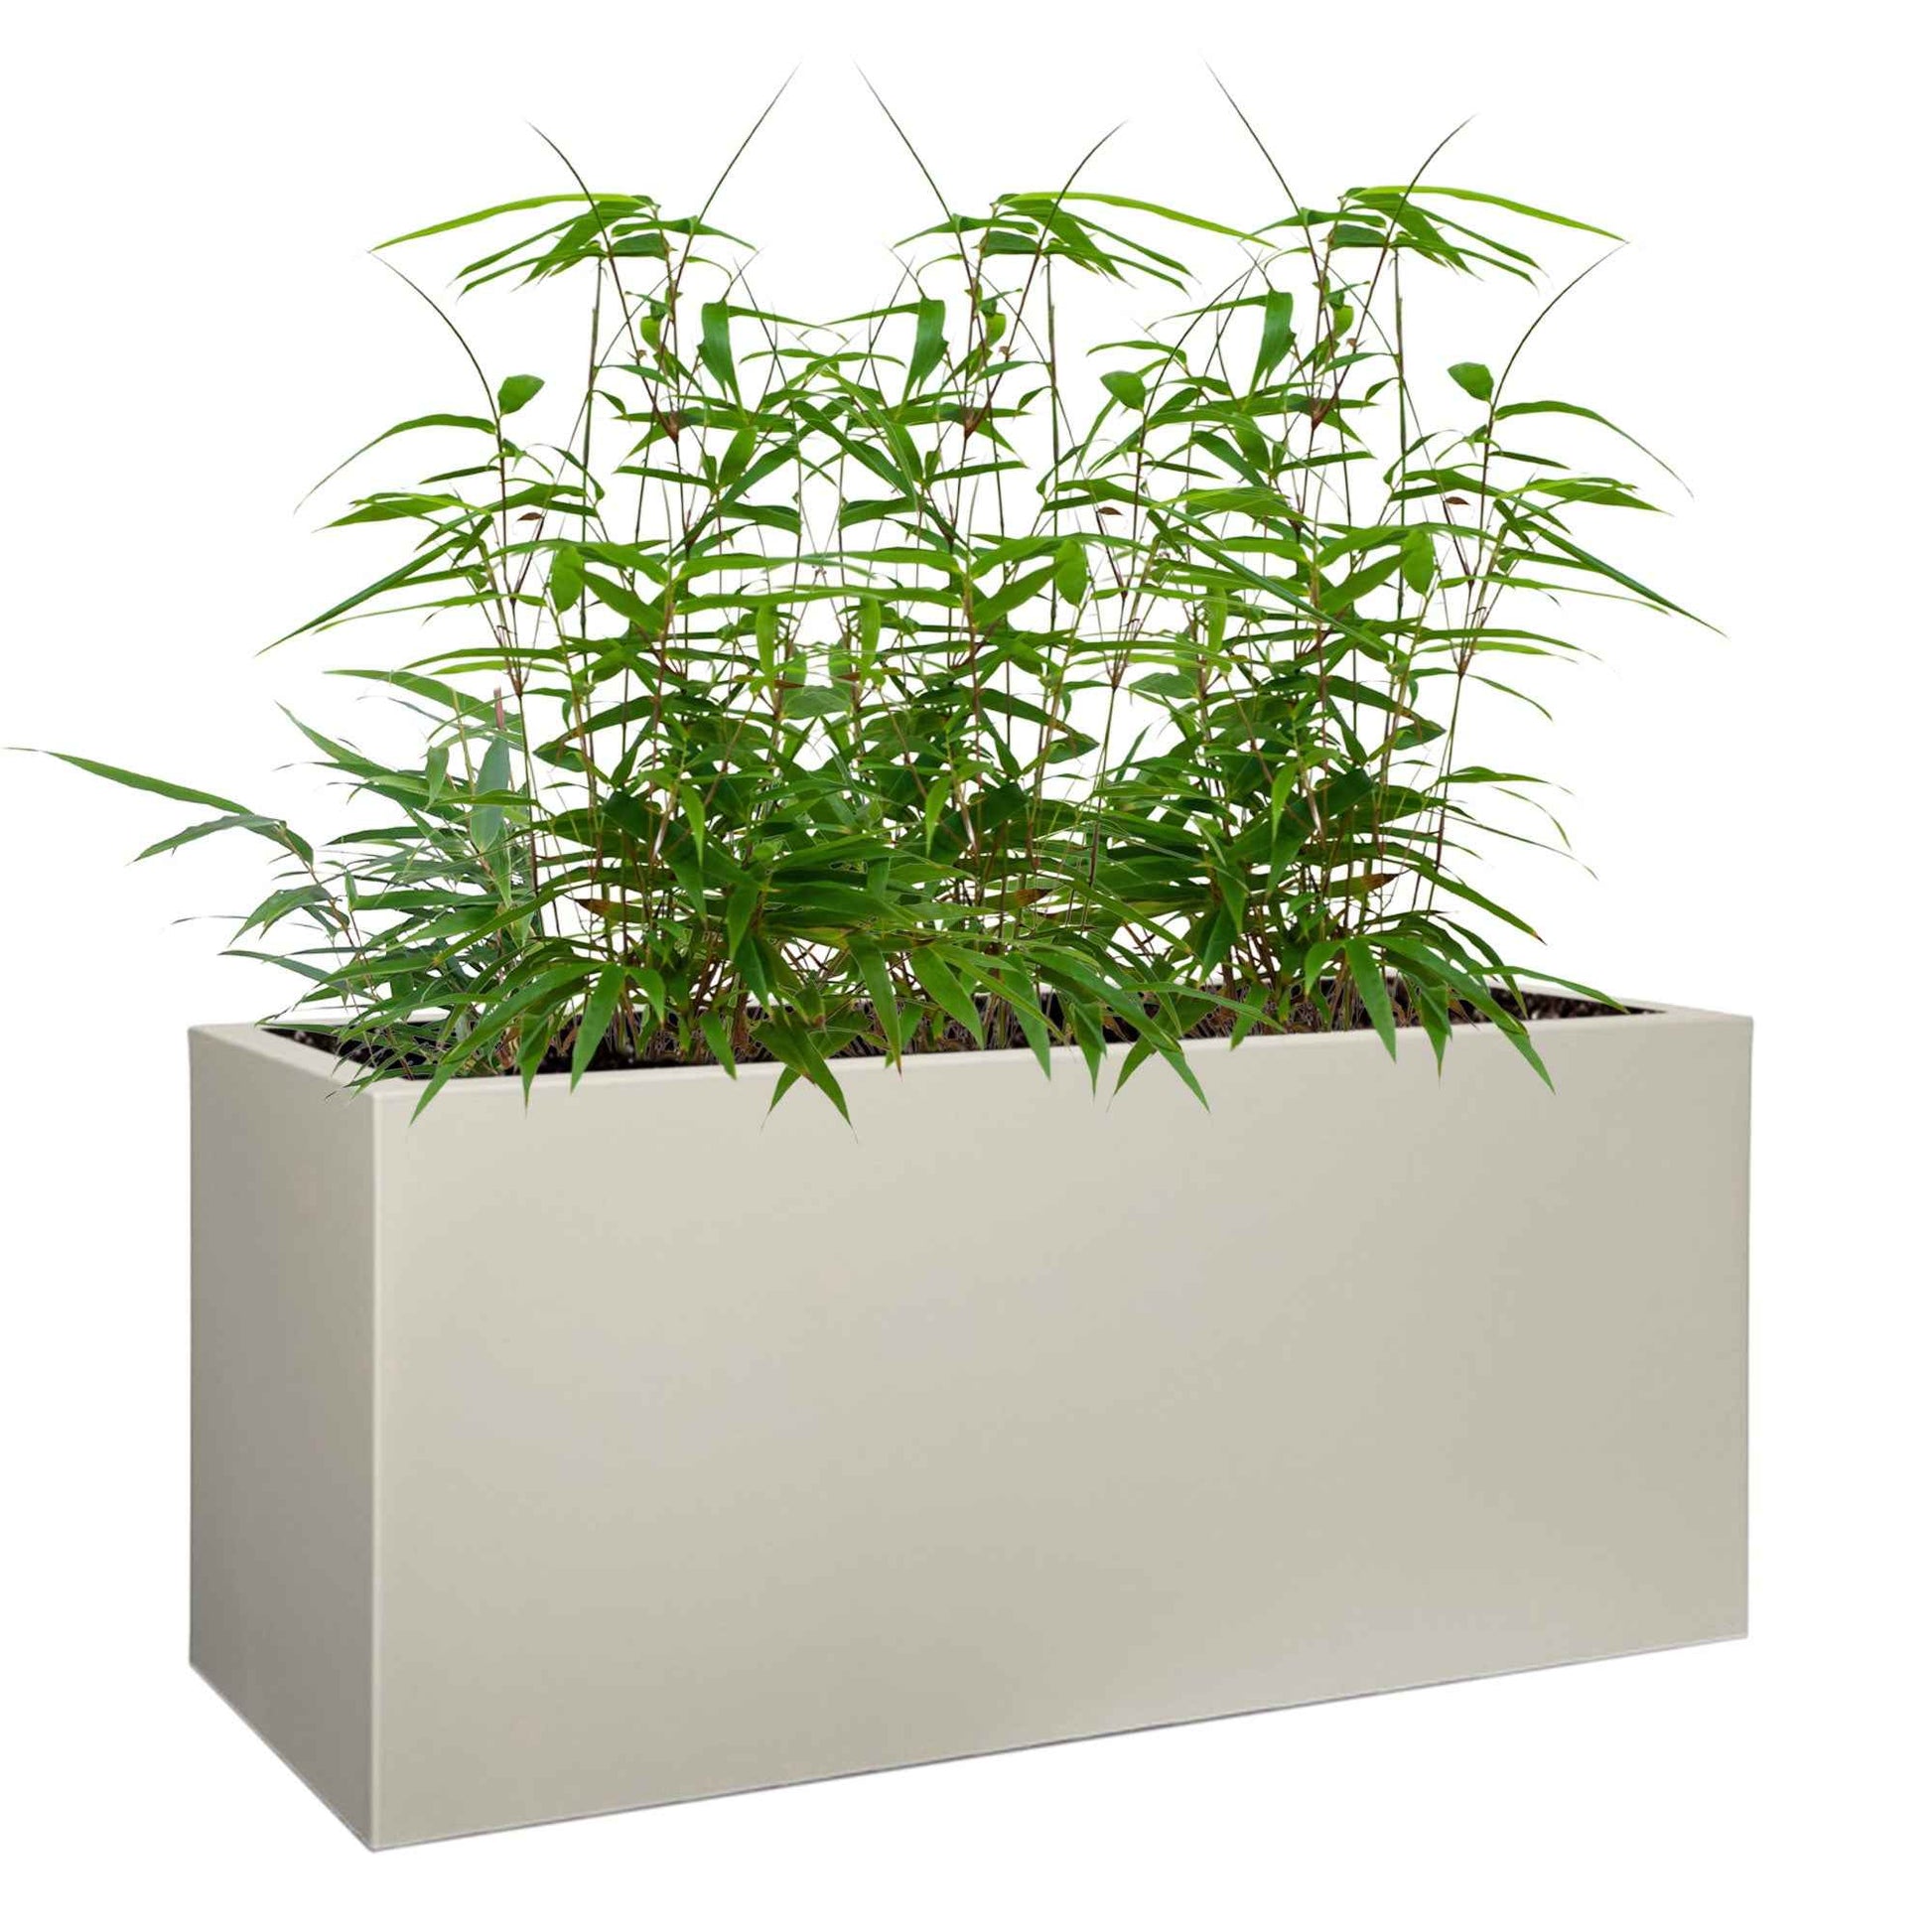 3 Bamboe Fargesia rufa incl. plantenbak grijs - Winterhard - Bamboes - Bambuseae